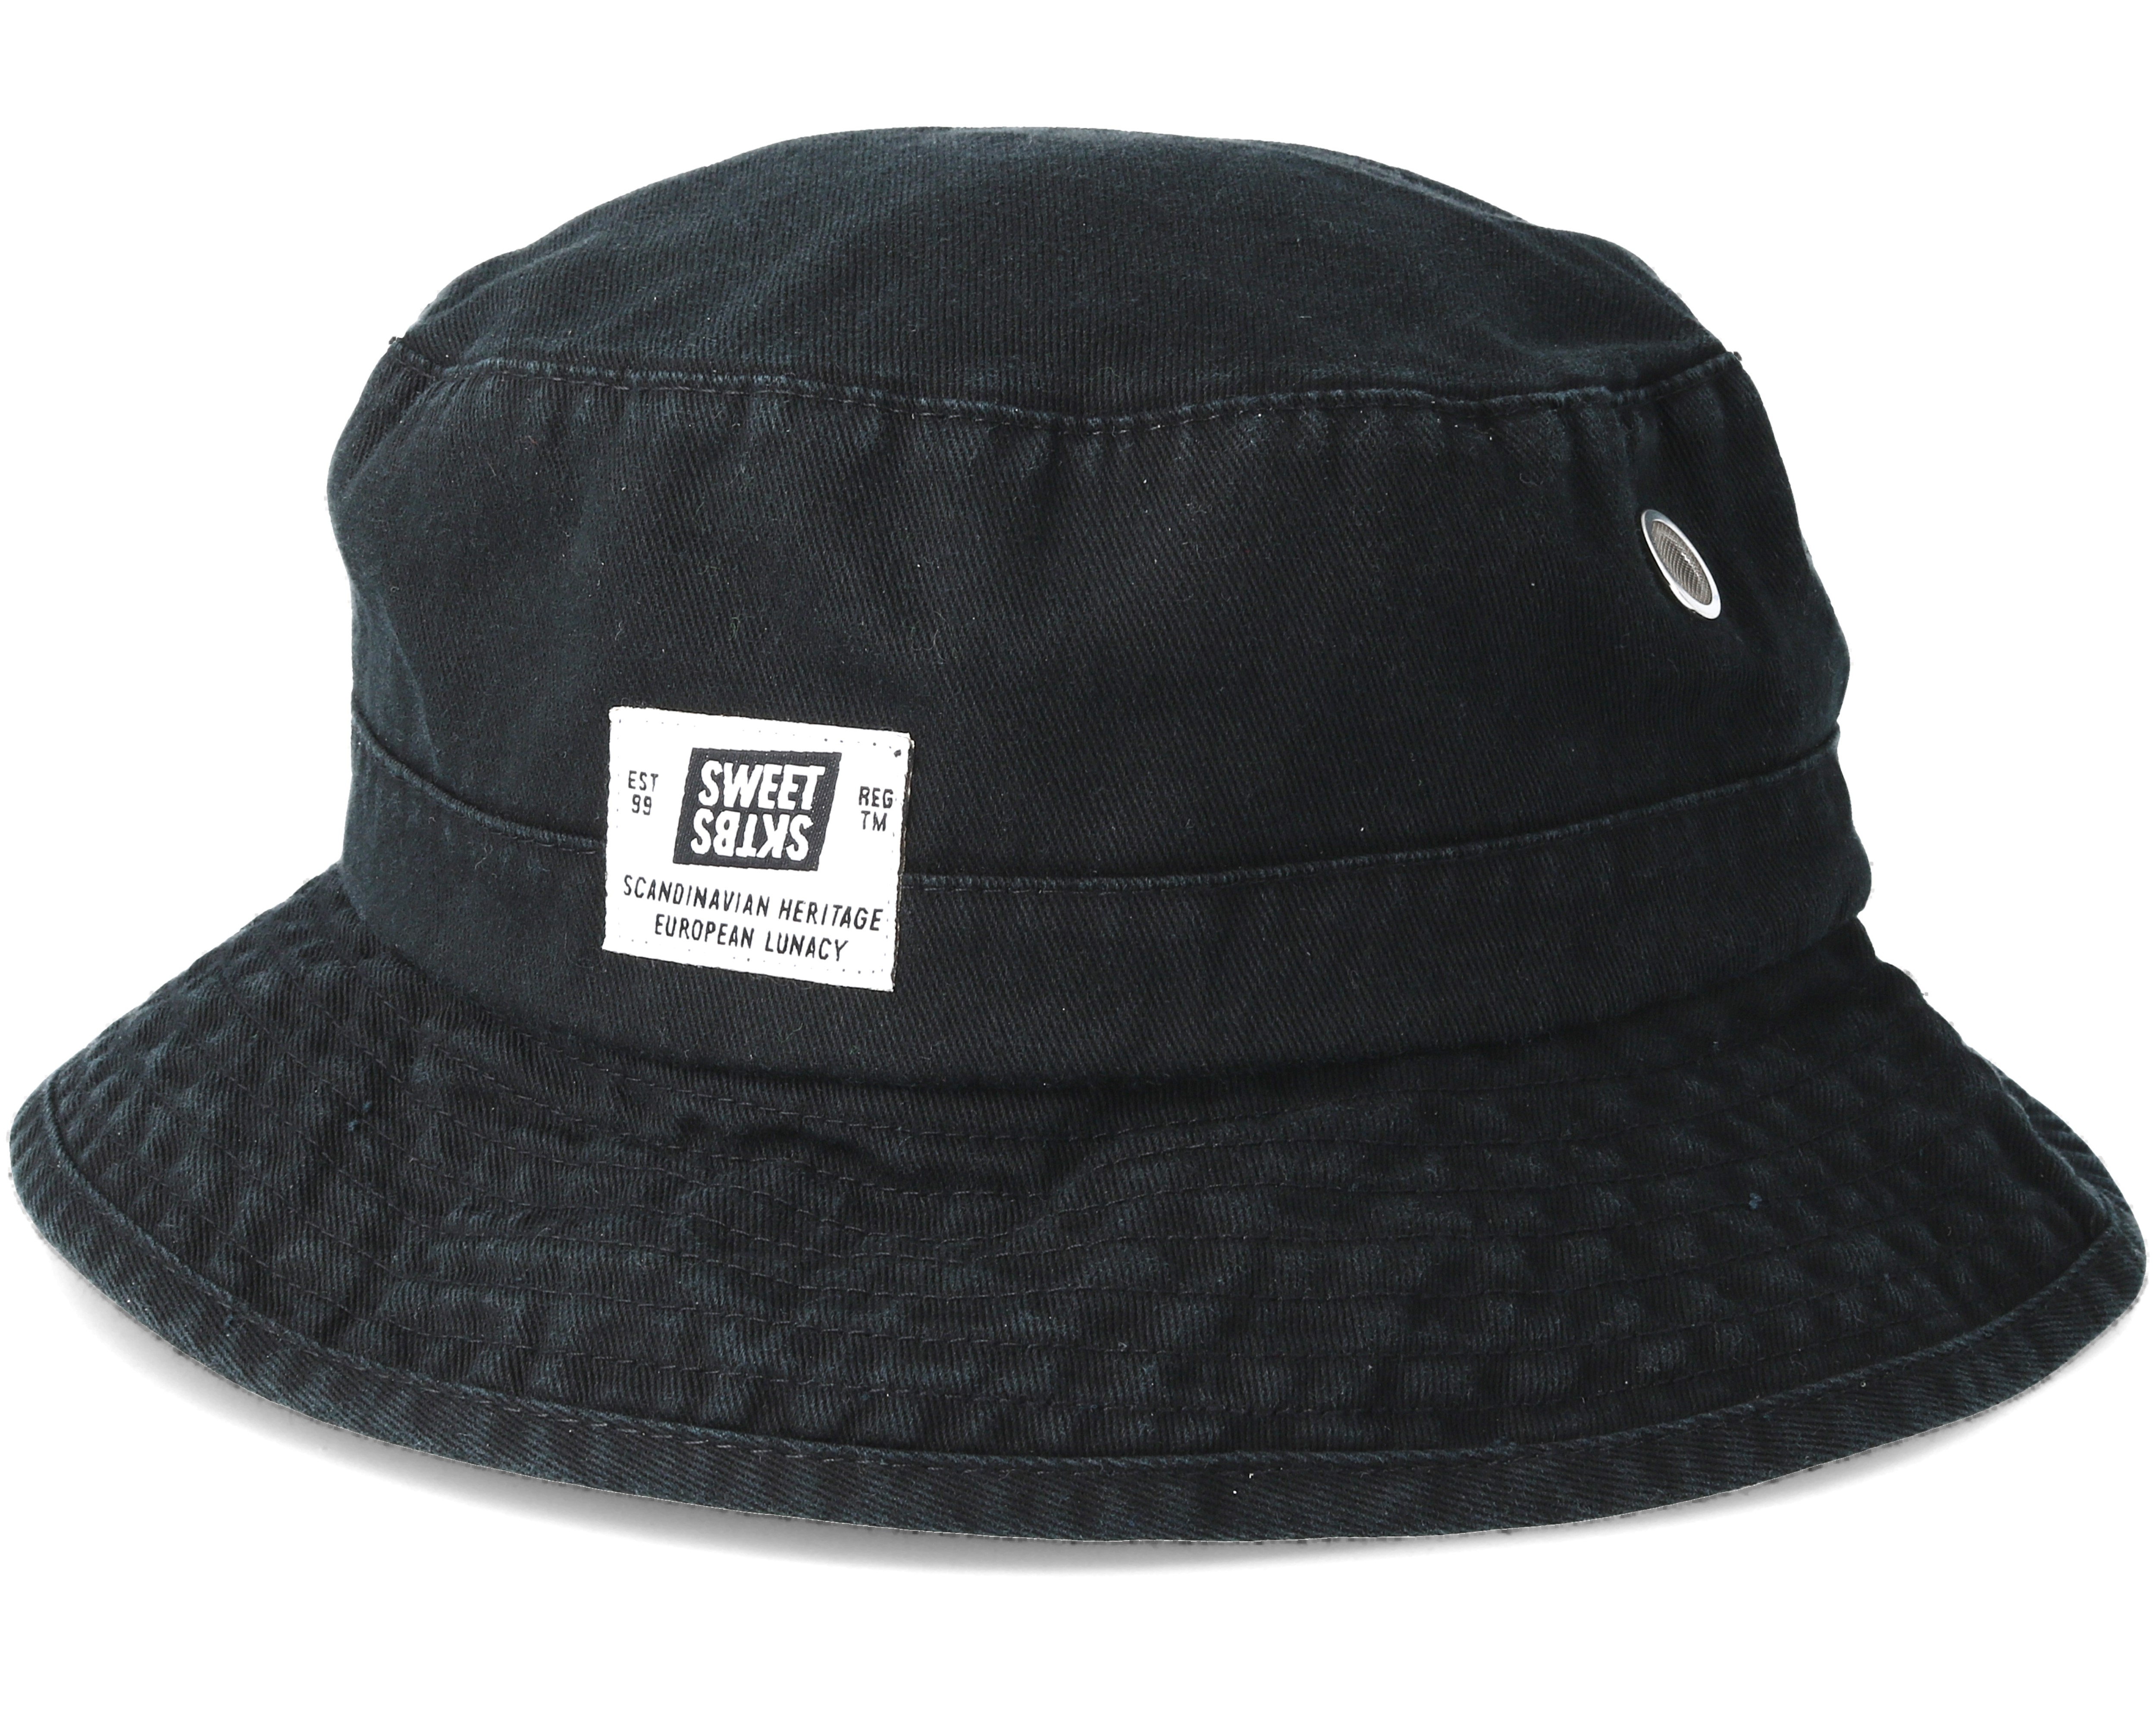 Fisherman Black Bucket - Sweet hats | Hatstore.co.uk